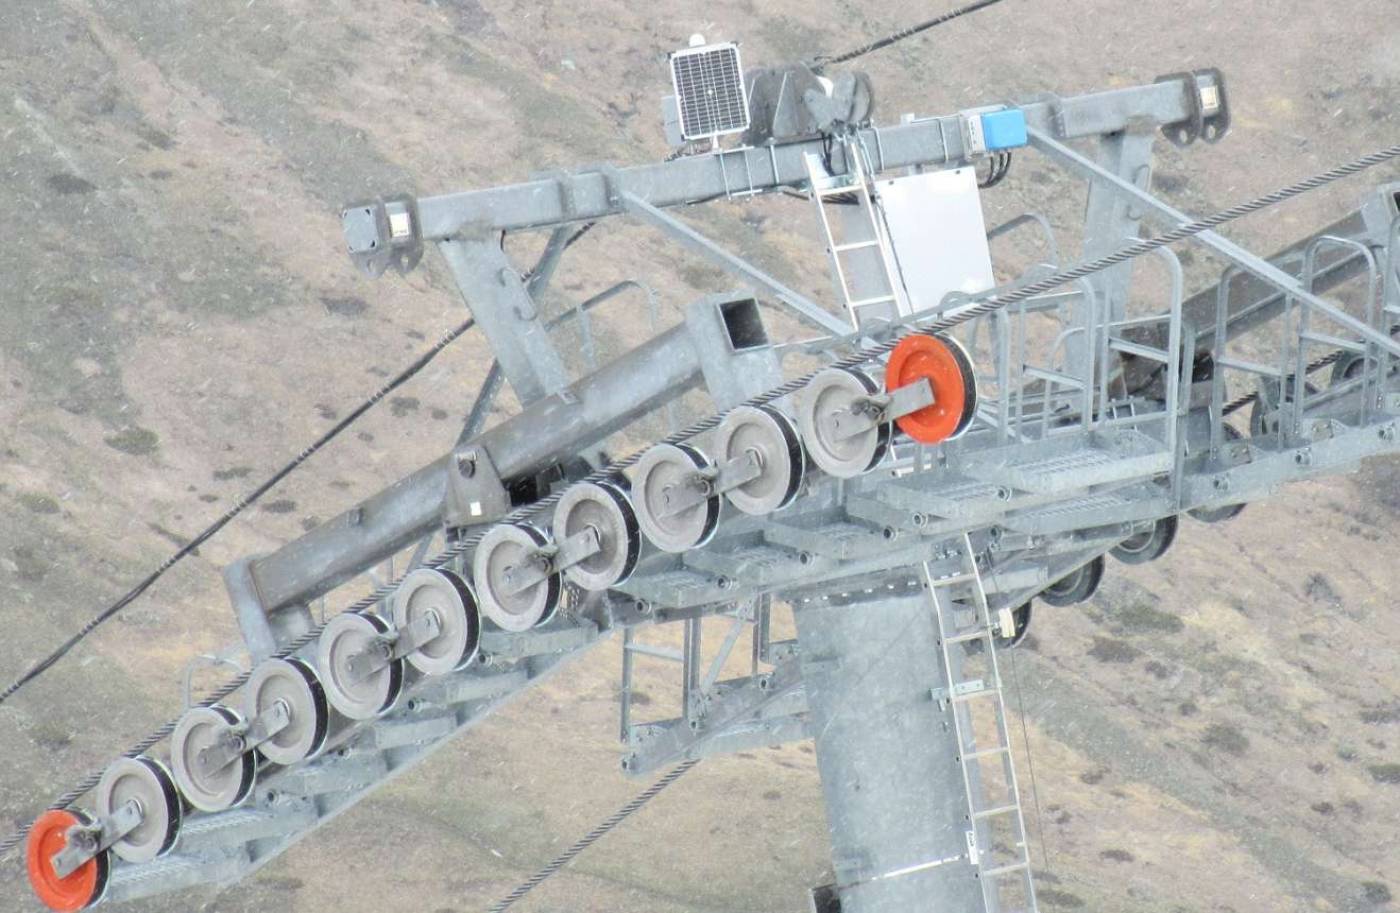 Monitoring Bergbahnen Zermatt
Permanente Stützen-Überwachungsmessungen, 9 GNSS: Überwachung mit hochpräzisen 4 Stunden-Lösungen, (< 3 mm in der Lage), 2 lokale GNSS-Referenzstationen, 2 Laserdistanzmessungen